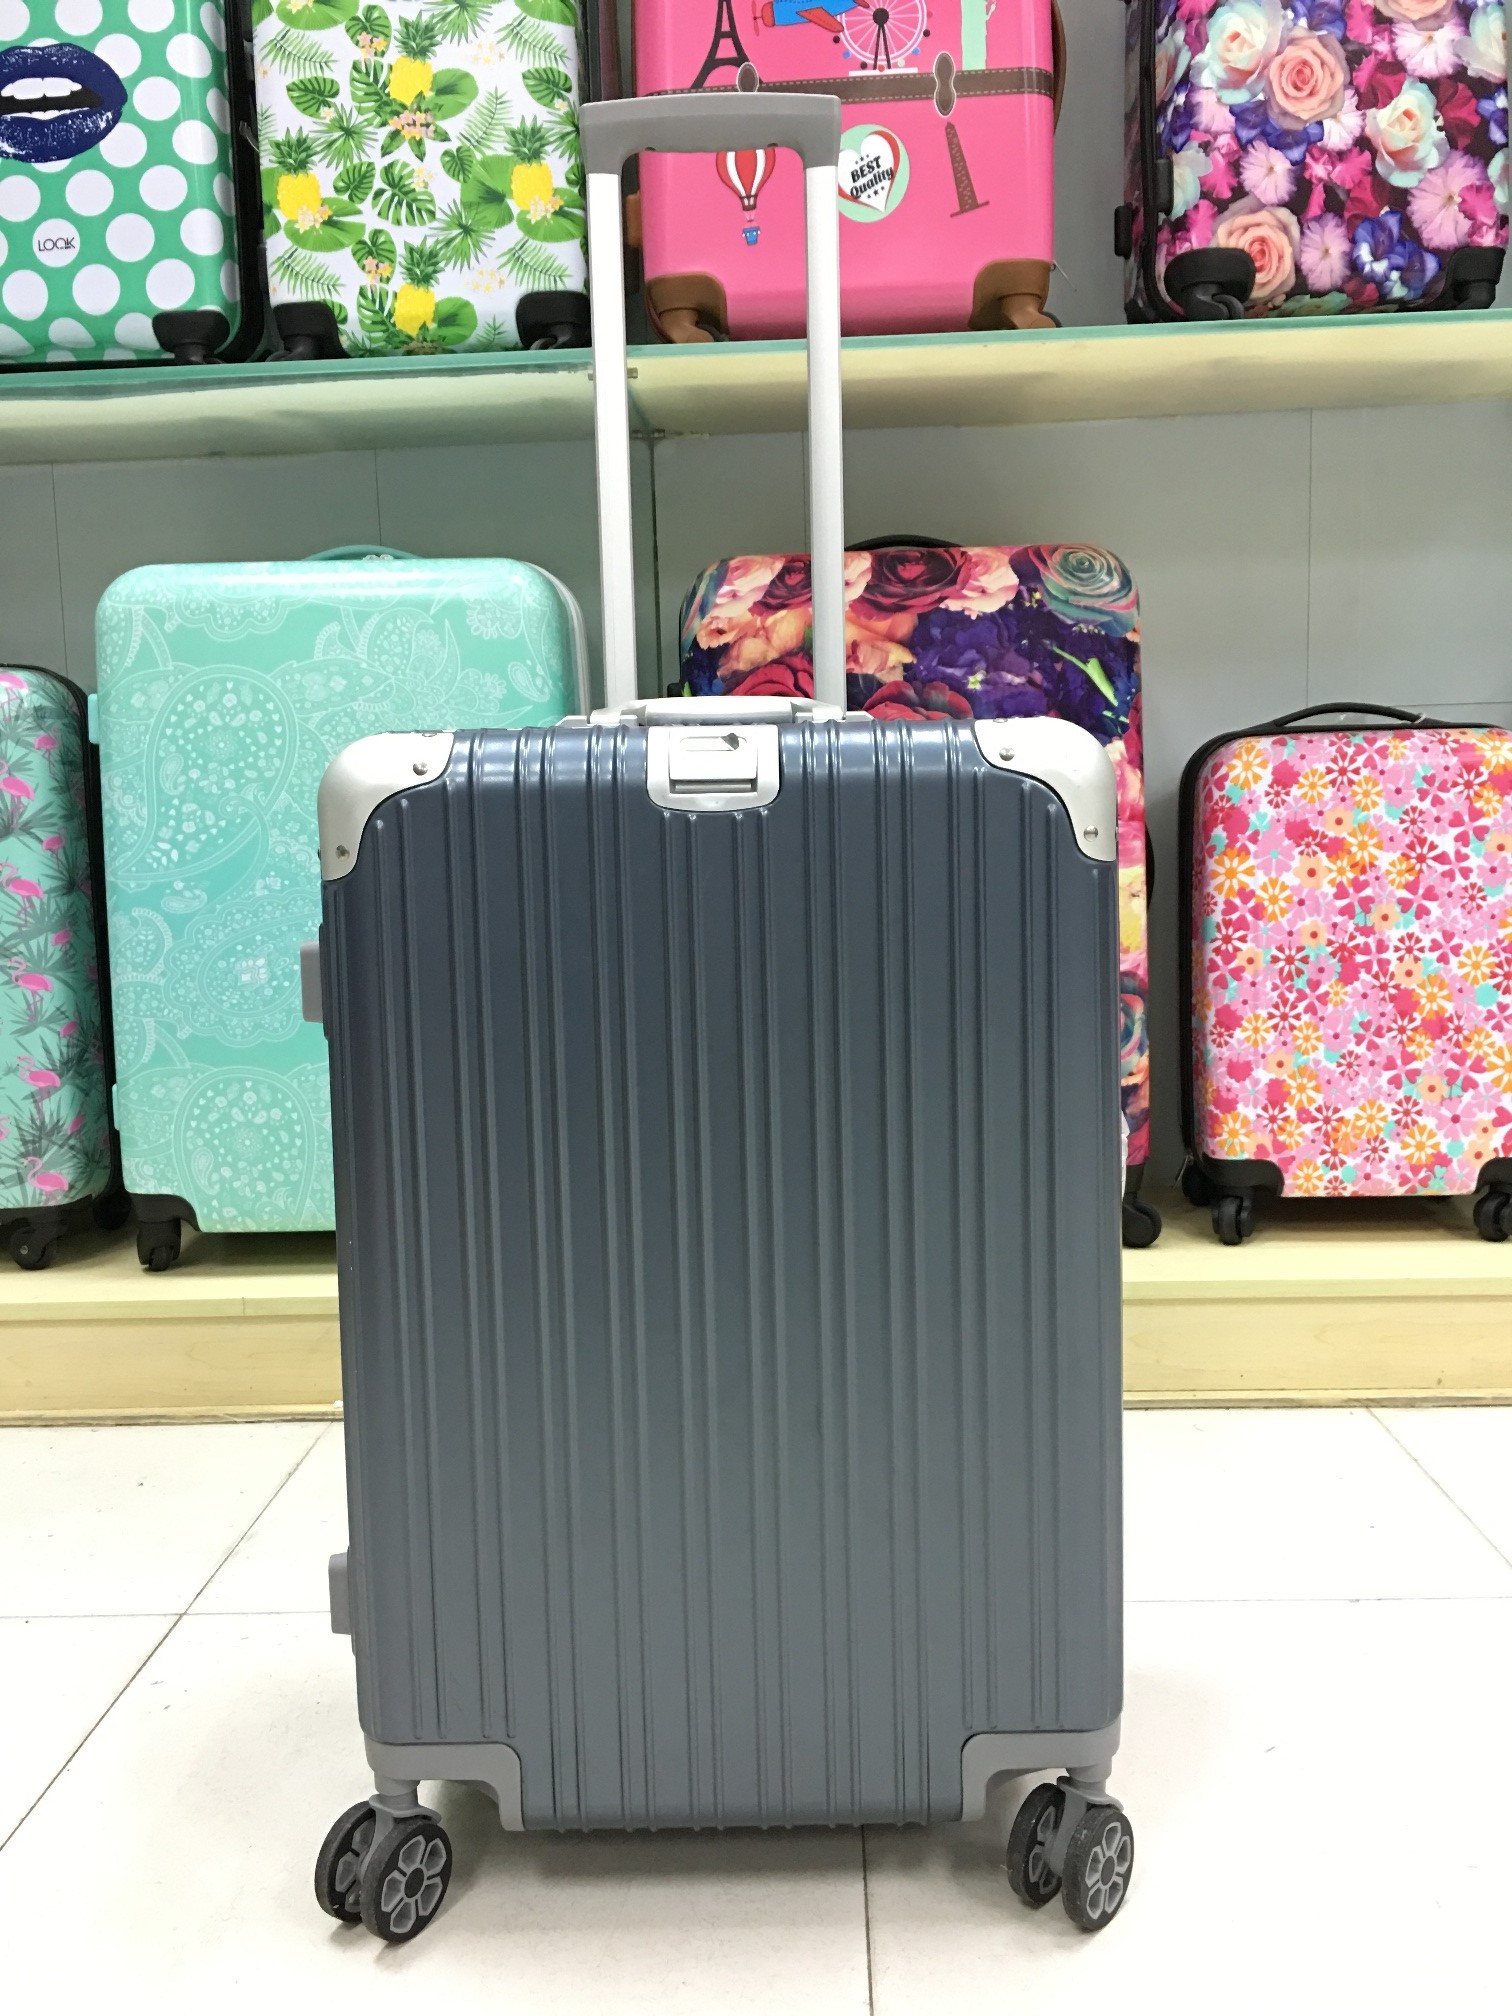 yanteng mens luggage with aluminium frame style